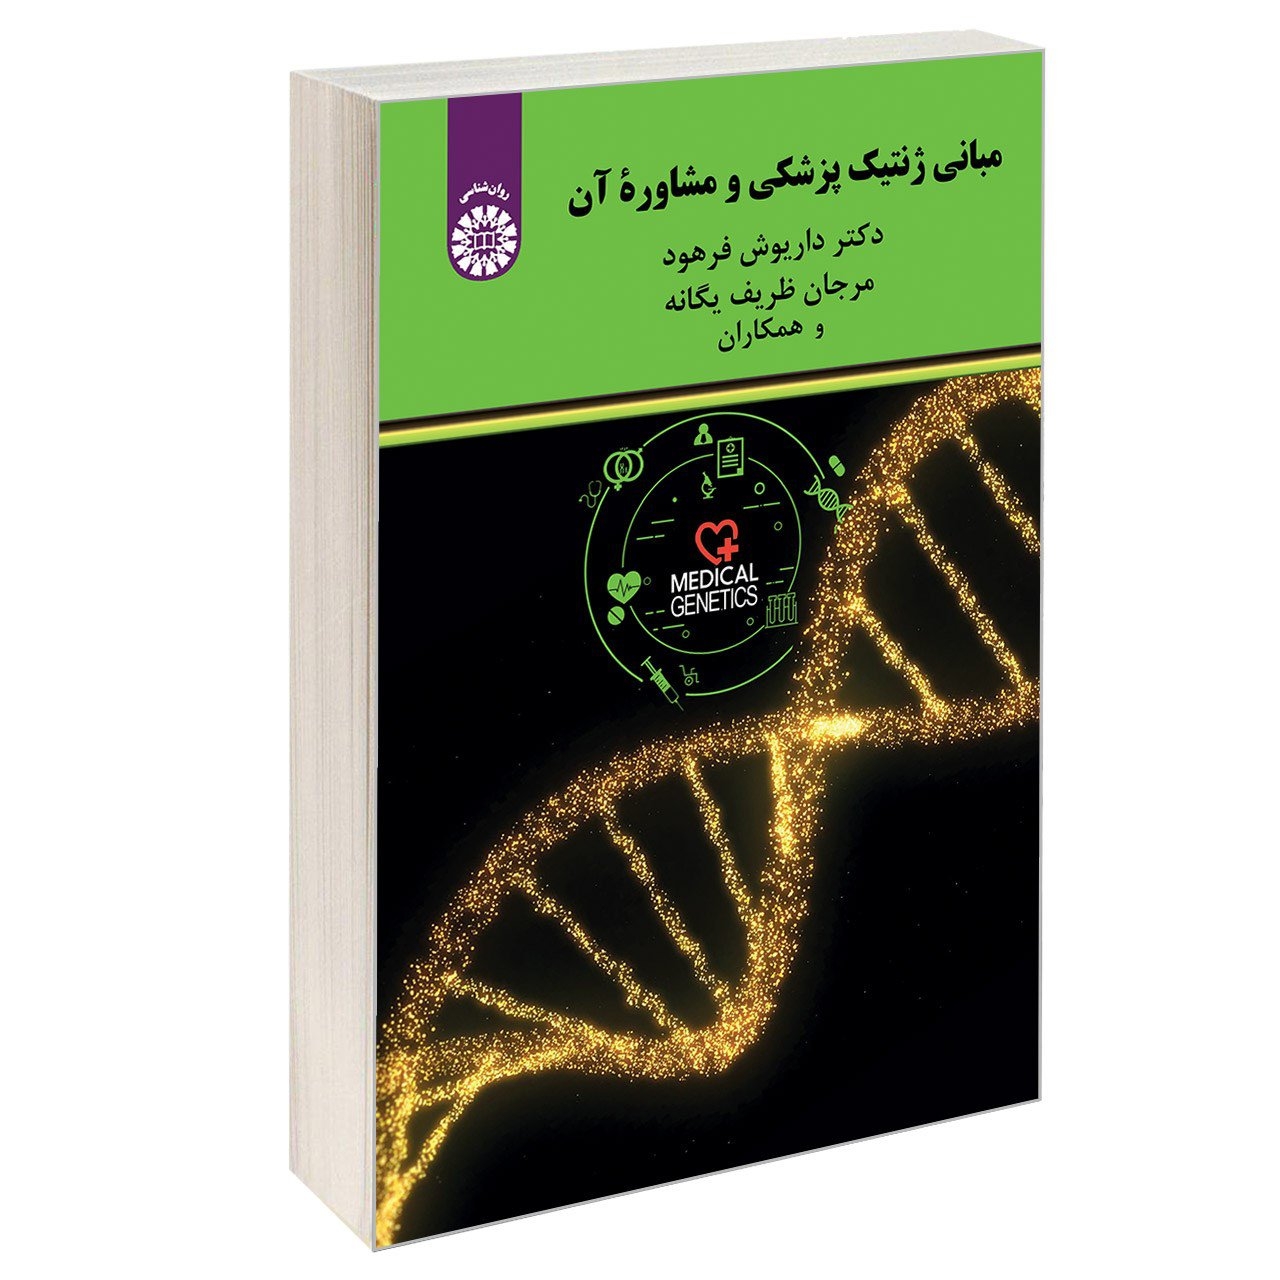 کتاب مبانی ژنتیک پزشکی و مشاوره آن اثر جمعی از نویسندگان نشر سمت